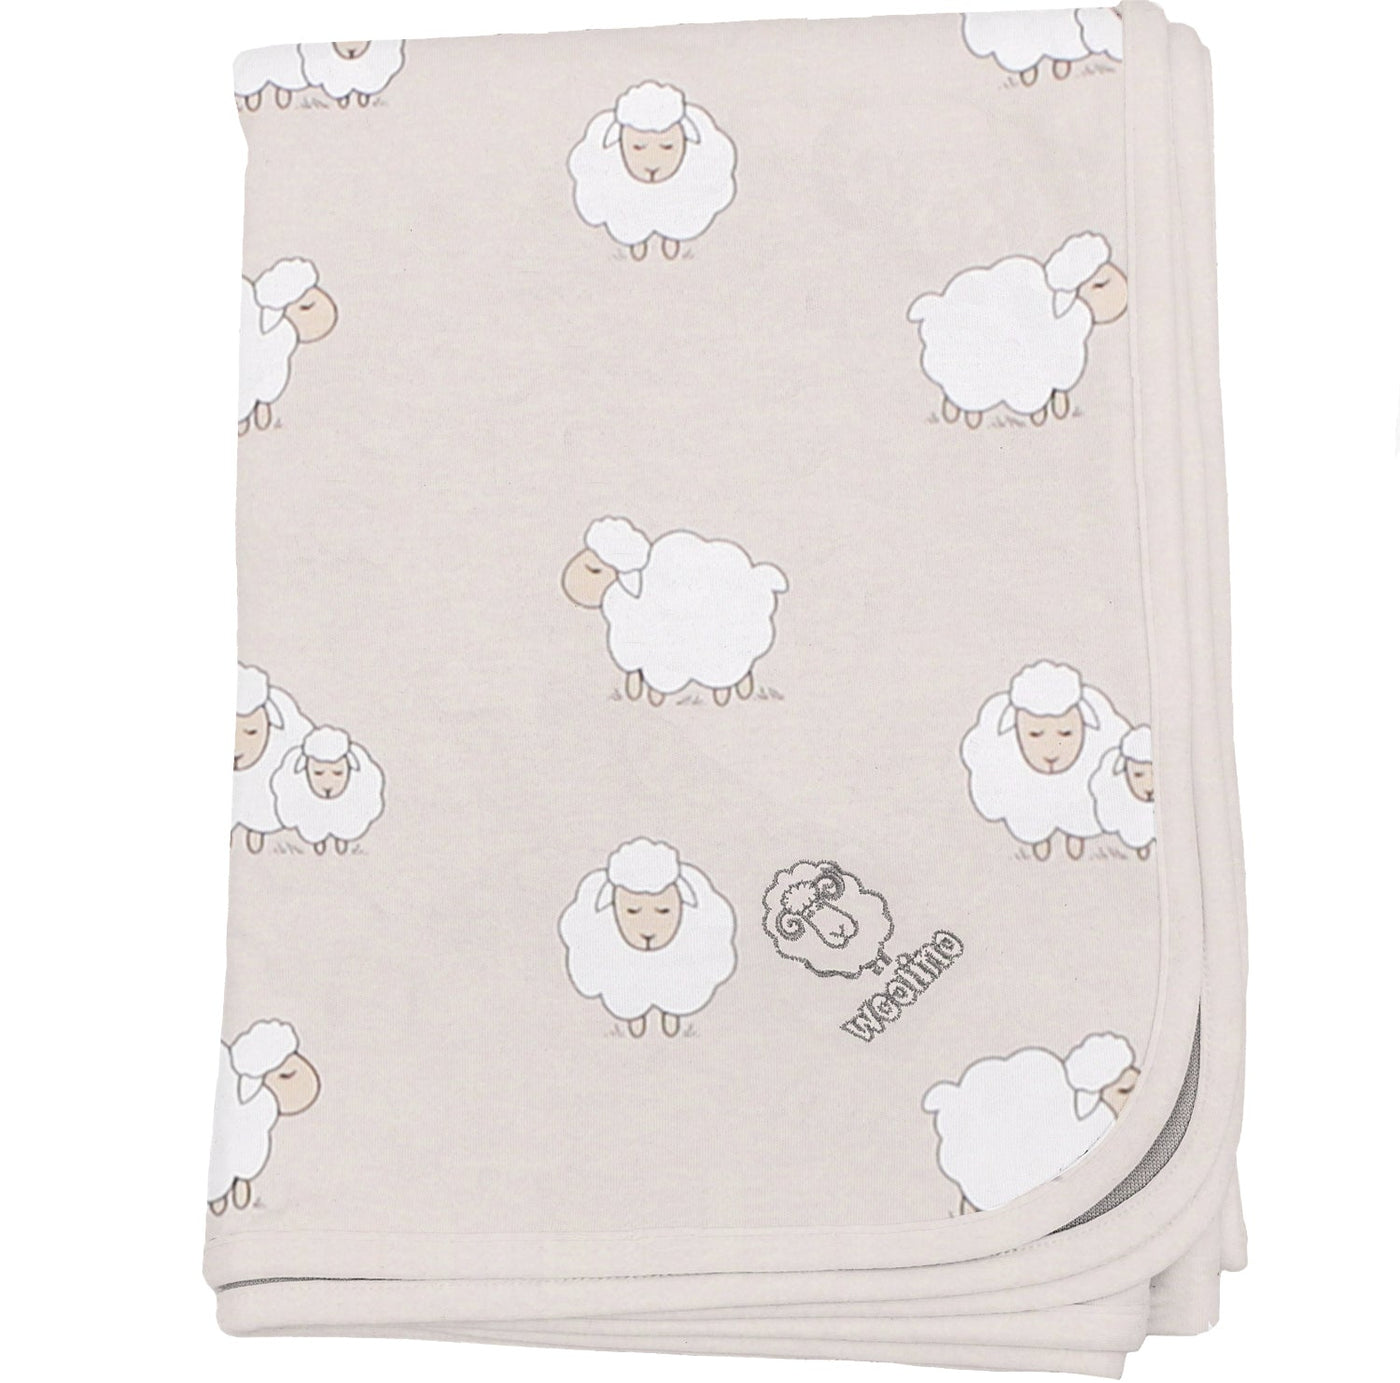 Imperfect Toddler Blanket, 4 Season® Merino Wool Blanket, 52.5" x 40", Sheep